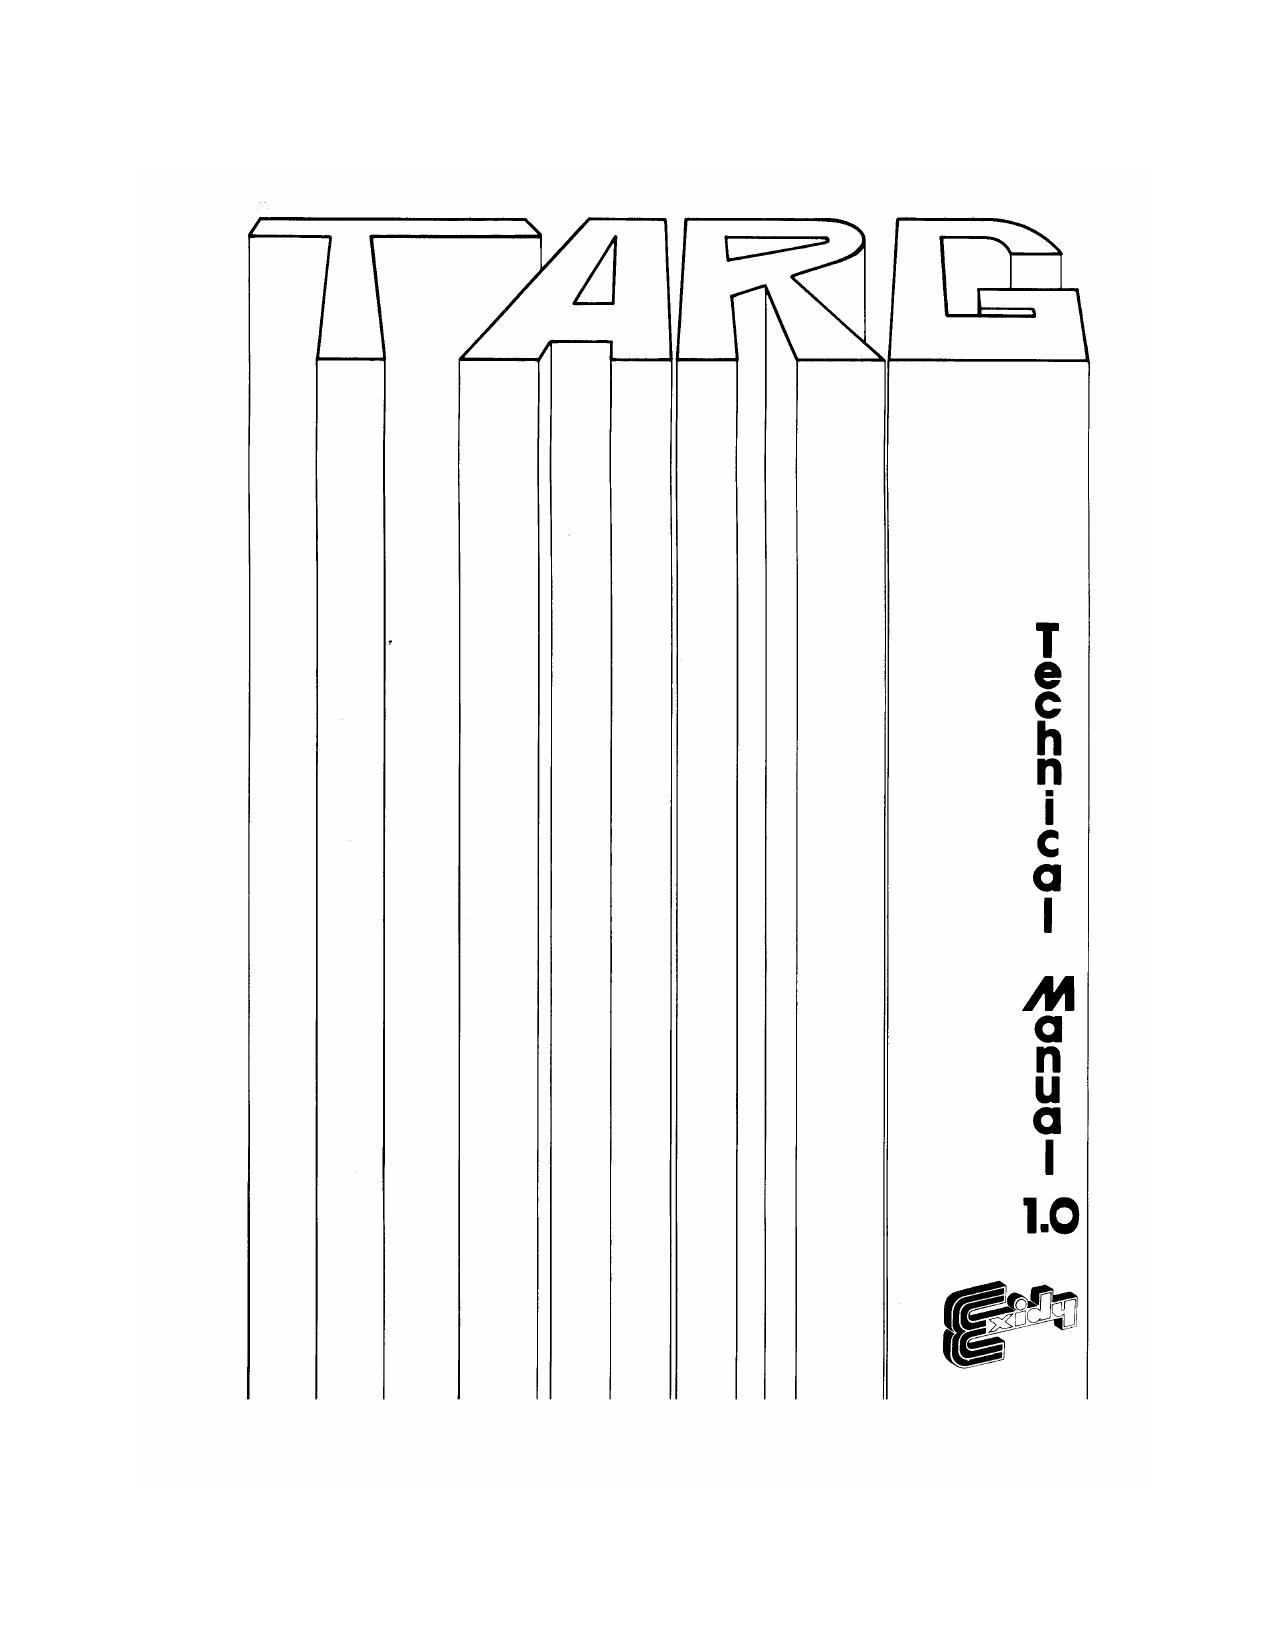 Targ Technical Manual V1.0